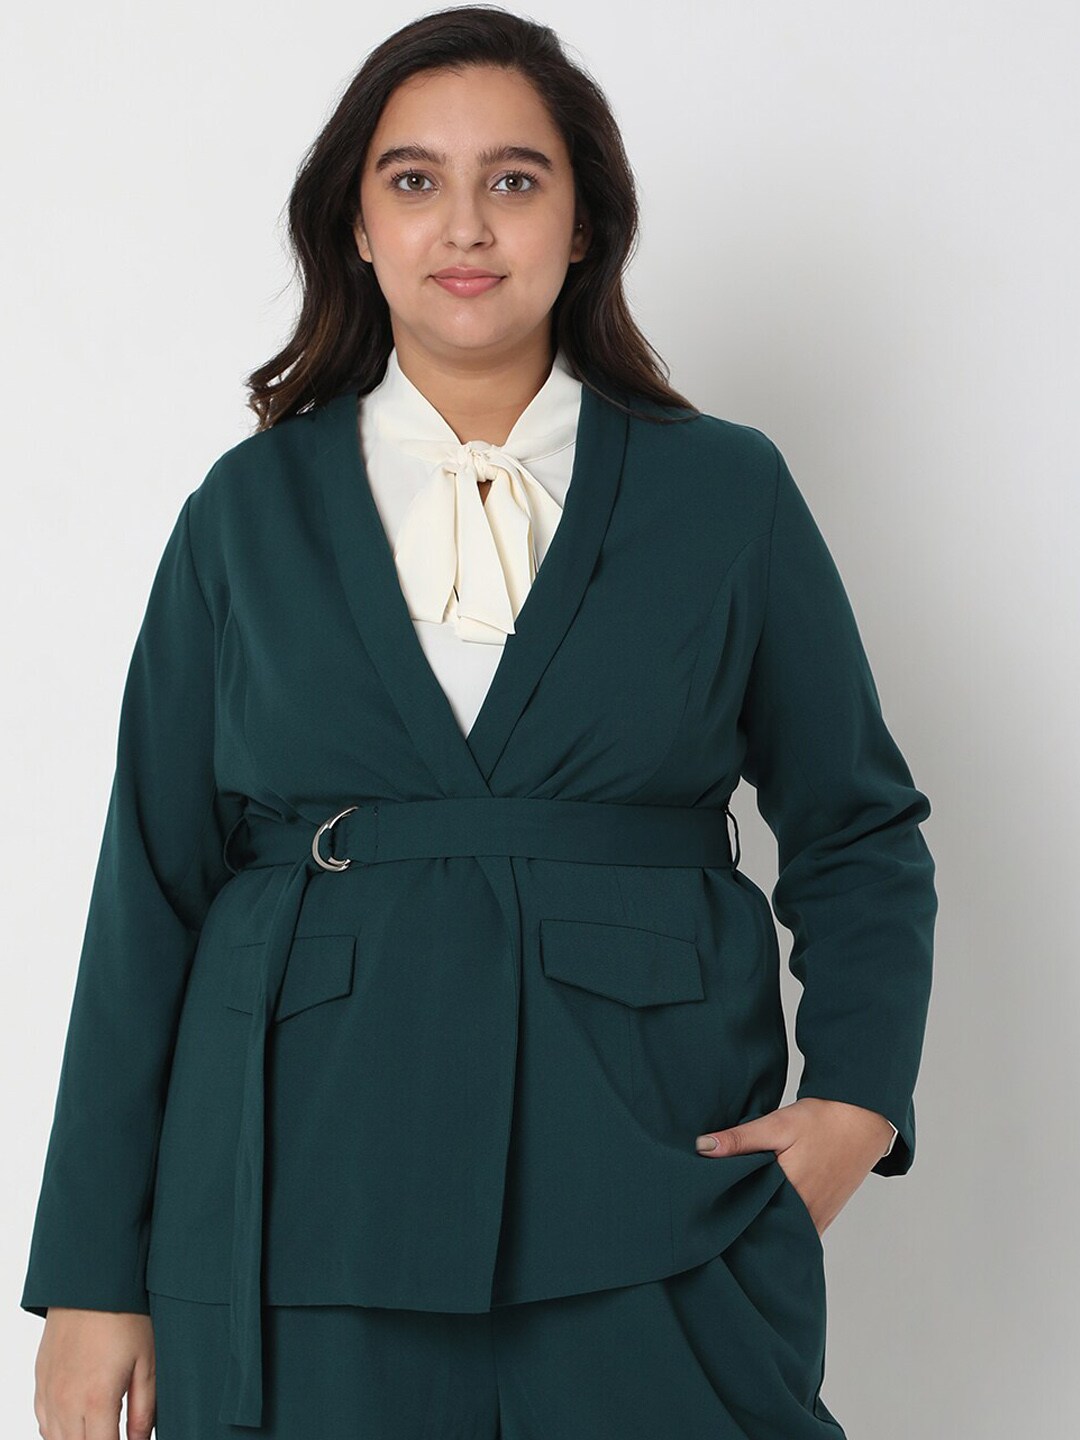 Vero Moda Women Green Solid Open Front Blazers Price in India